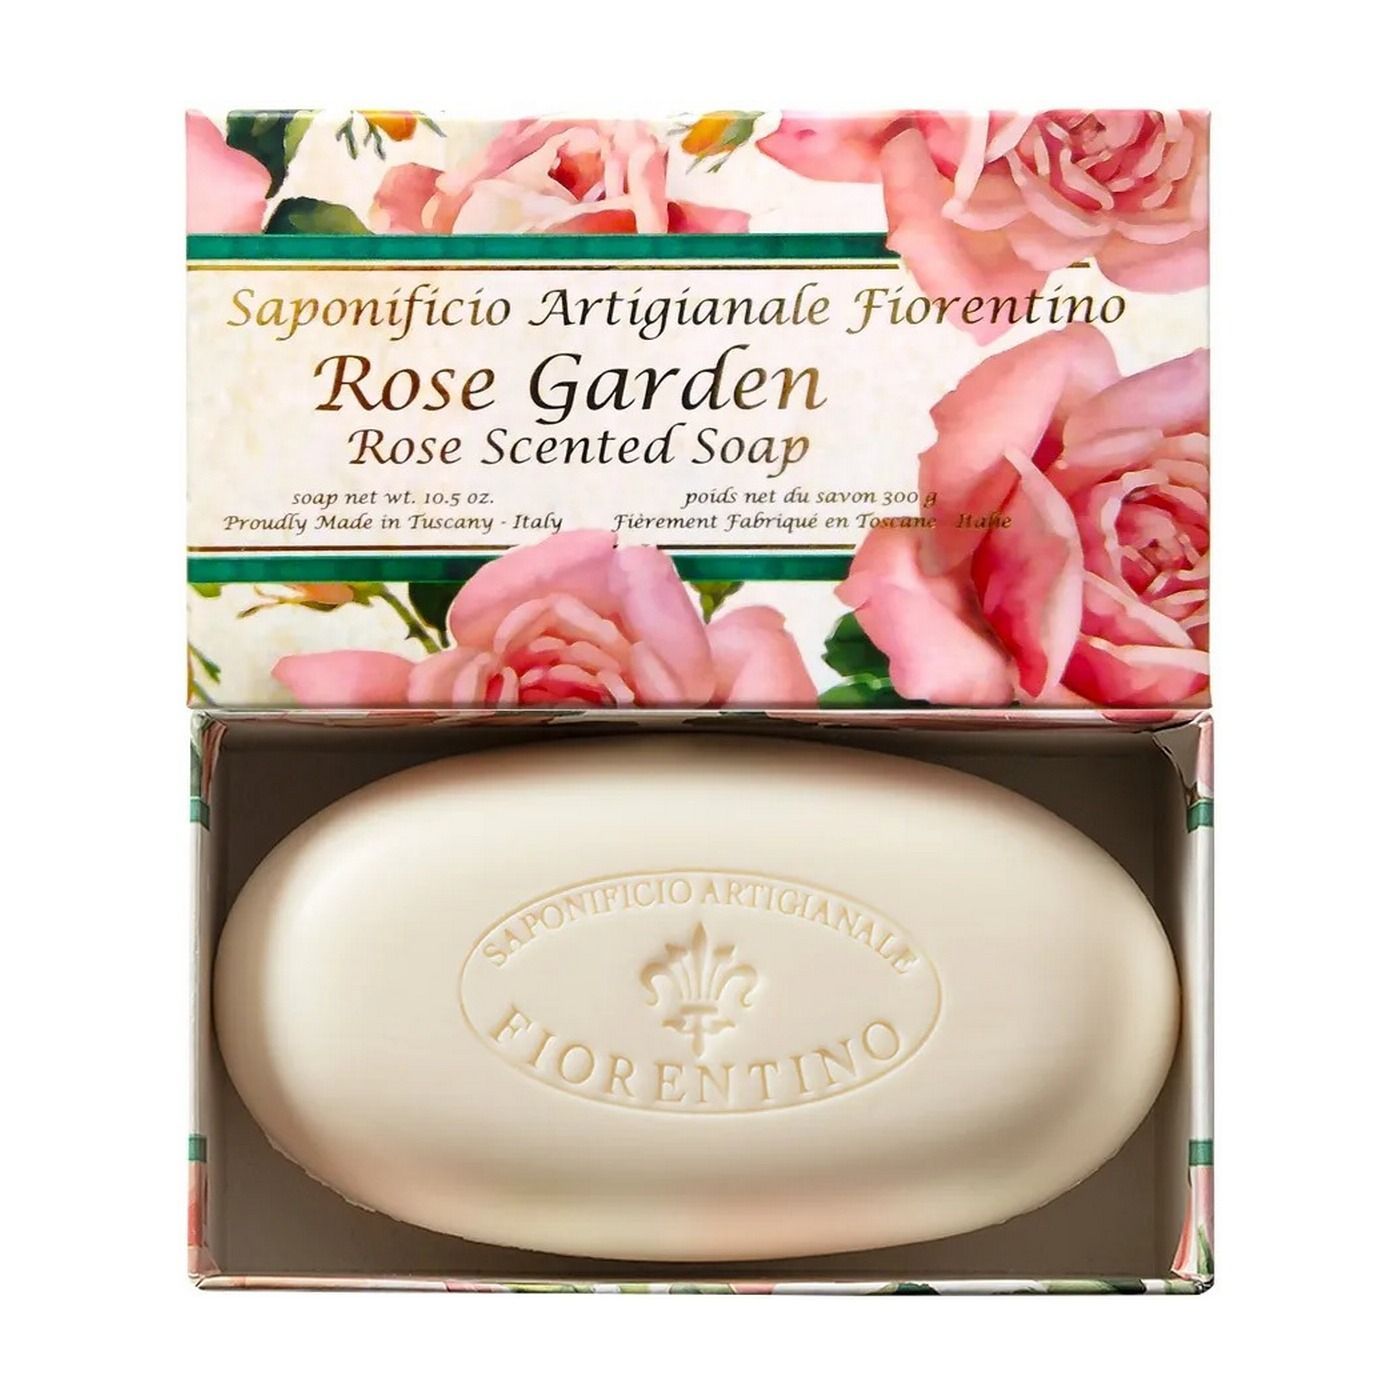 Saponificio Artigianale Fiorentino Rose Garden Мыло туалетное ручной работы с ароматом Садовой розы 300 гр в коробке